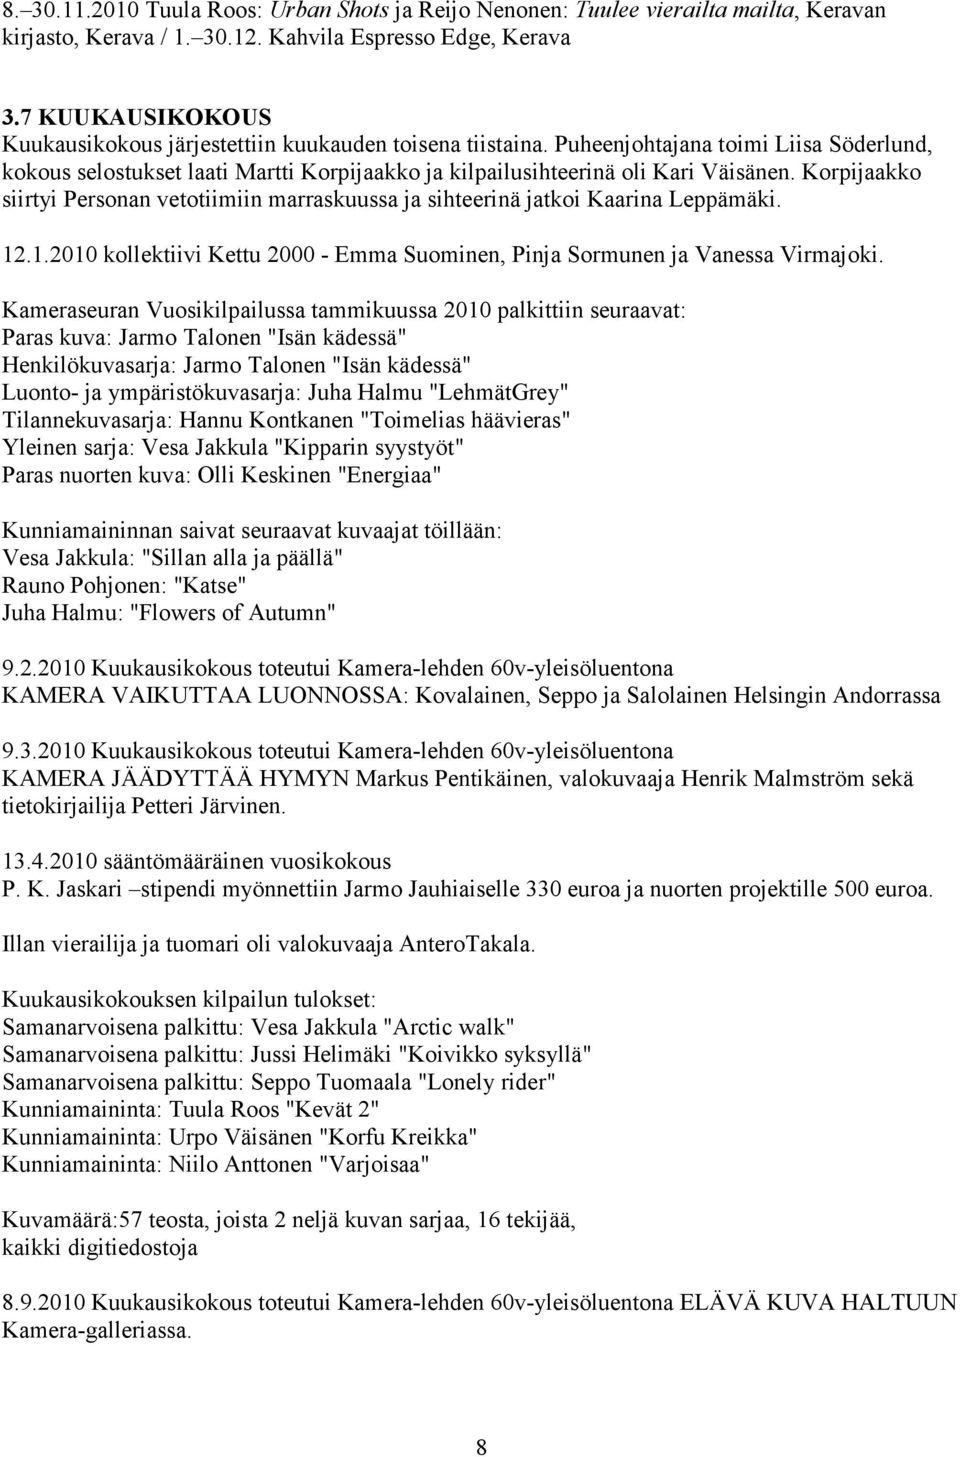 Korpijaakko siirtyi Personan vetotiimiin marraskuussa ja sihteerinä jatkoi Kaarina Leppämäki. 12.1.2010 kollektiivi Kettu 2000 - Emma Suominen, Pinja Sormunen ja Vanessa Virmajoki.